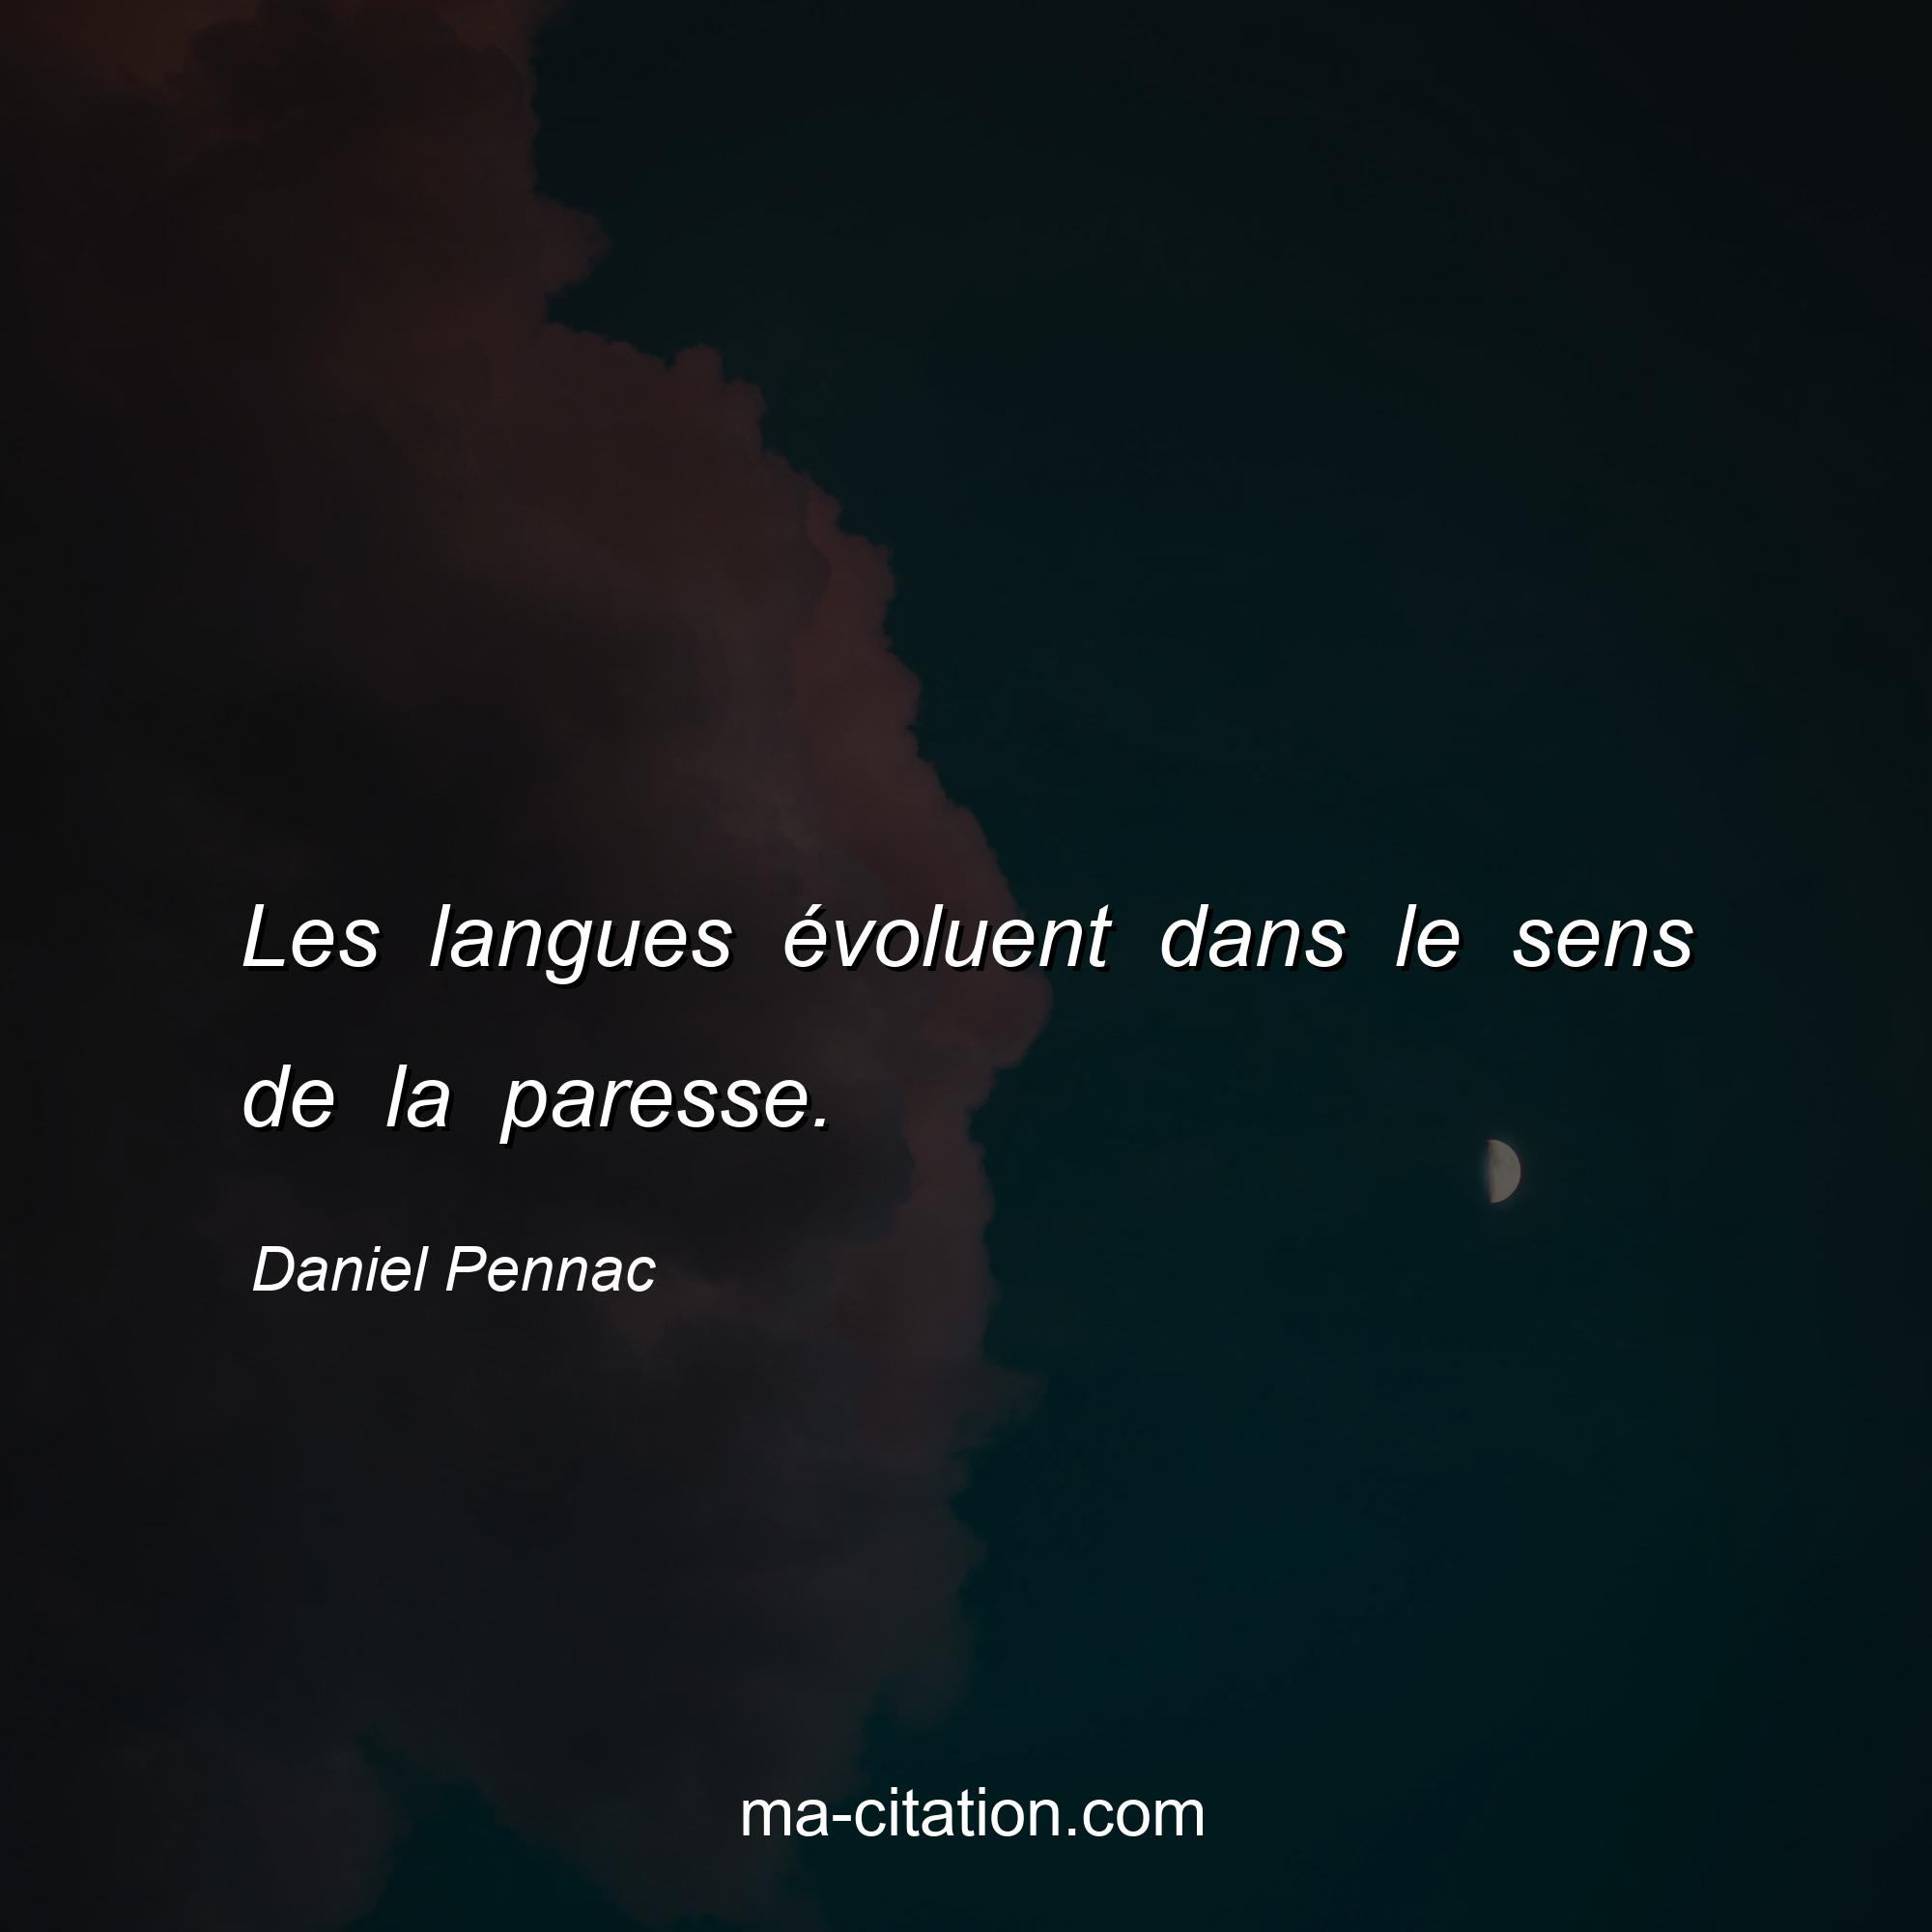 Daniel Pennac : Les langues évoluent dans le sens de la paresse.